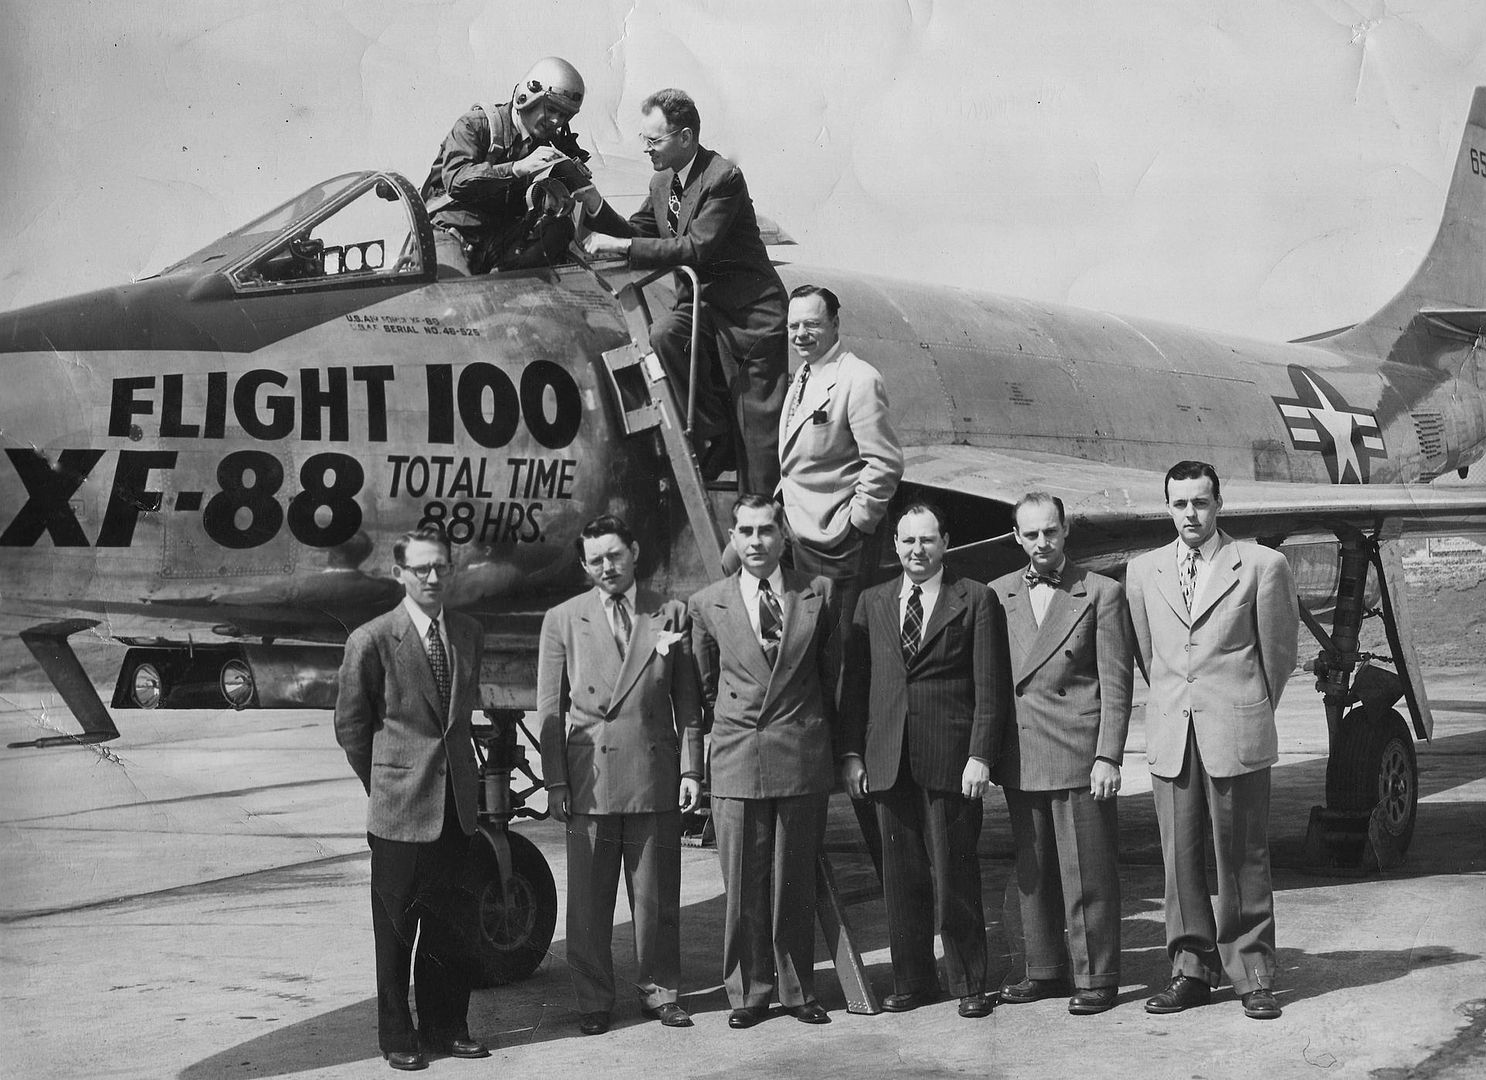 XF 88 Team After Flight 100